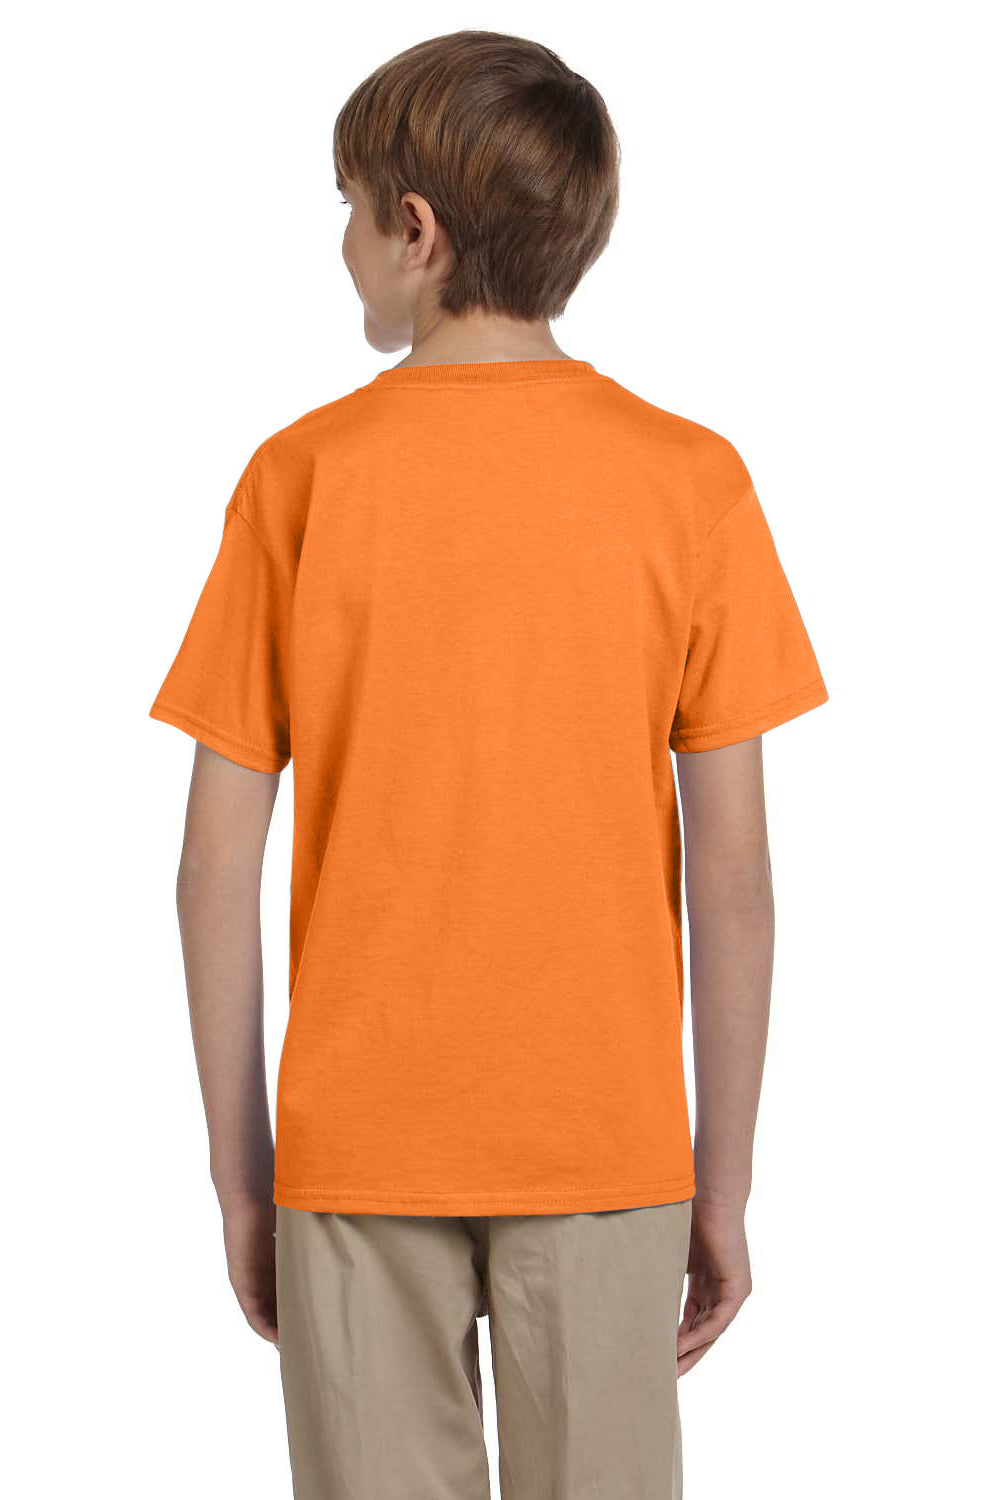 Hanes 5370 Youth EcoSmart Short Sleeve Crewneck T-Shirt Safety Orange Back